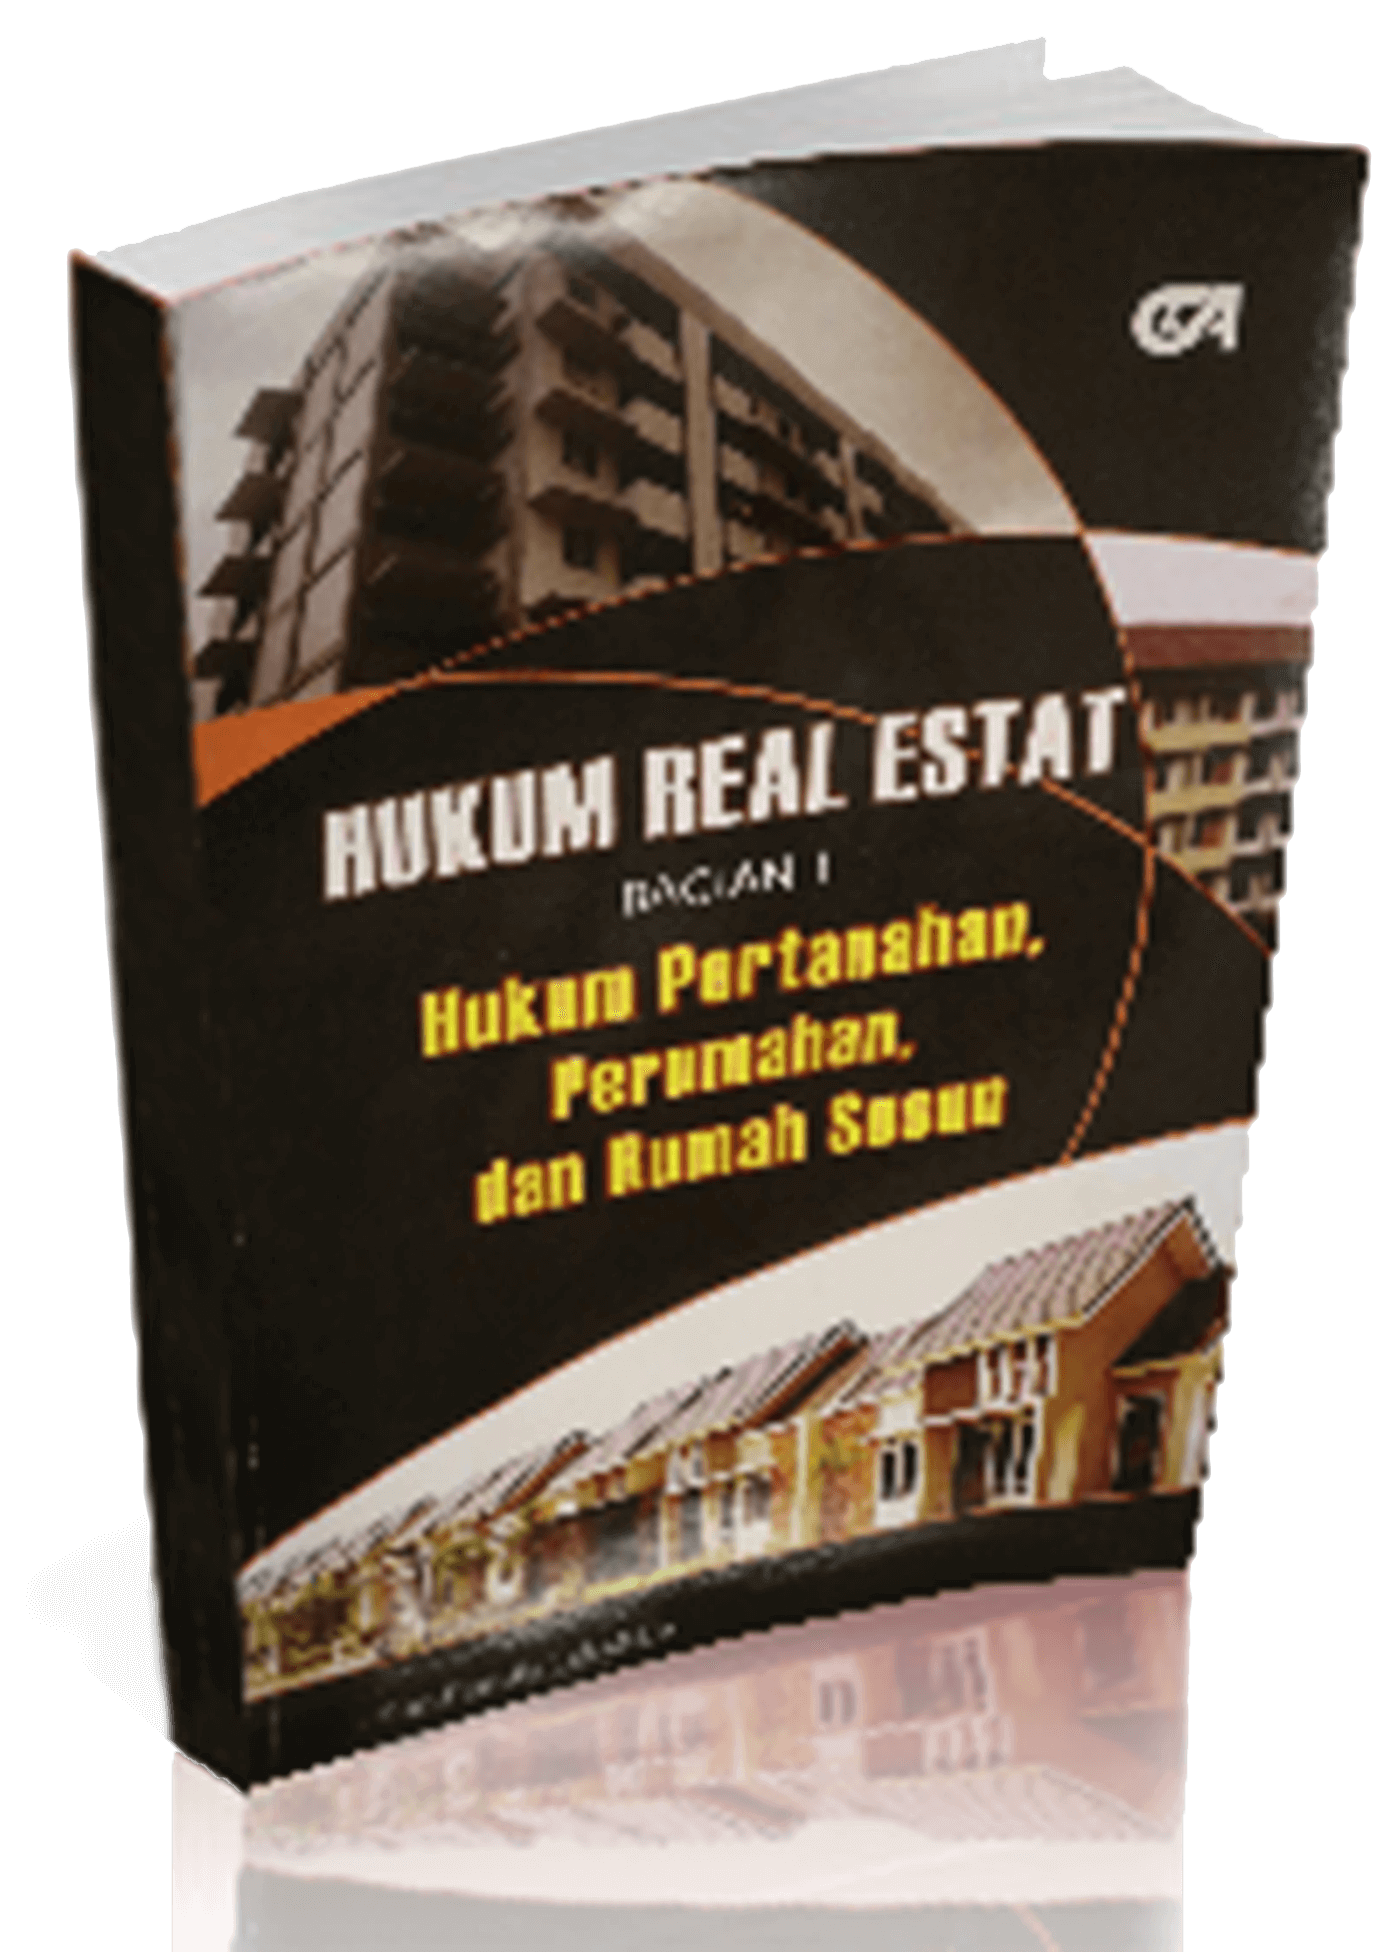 The release of the first book of Leks&Co Lawyers titled “Hukum Real Estat (Bagian 1): Hukum Pertanahan, Perumahan, dan Rumah Susun”